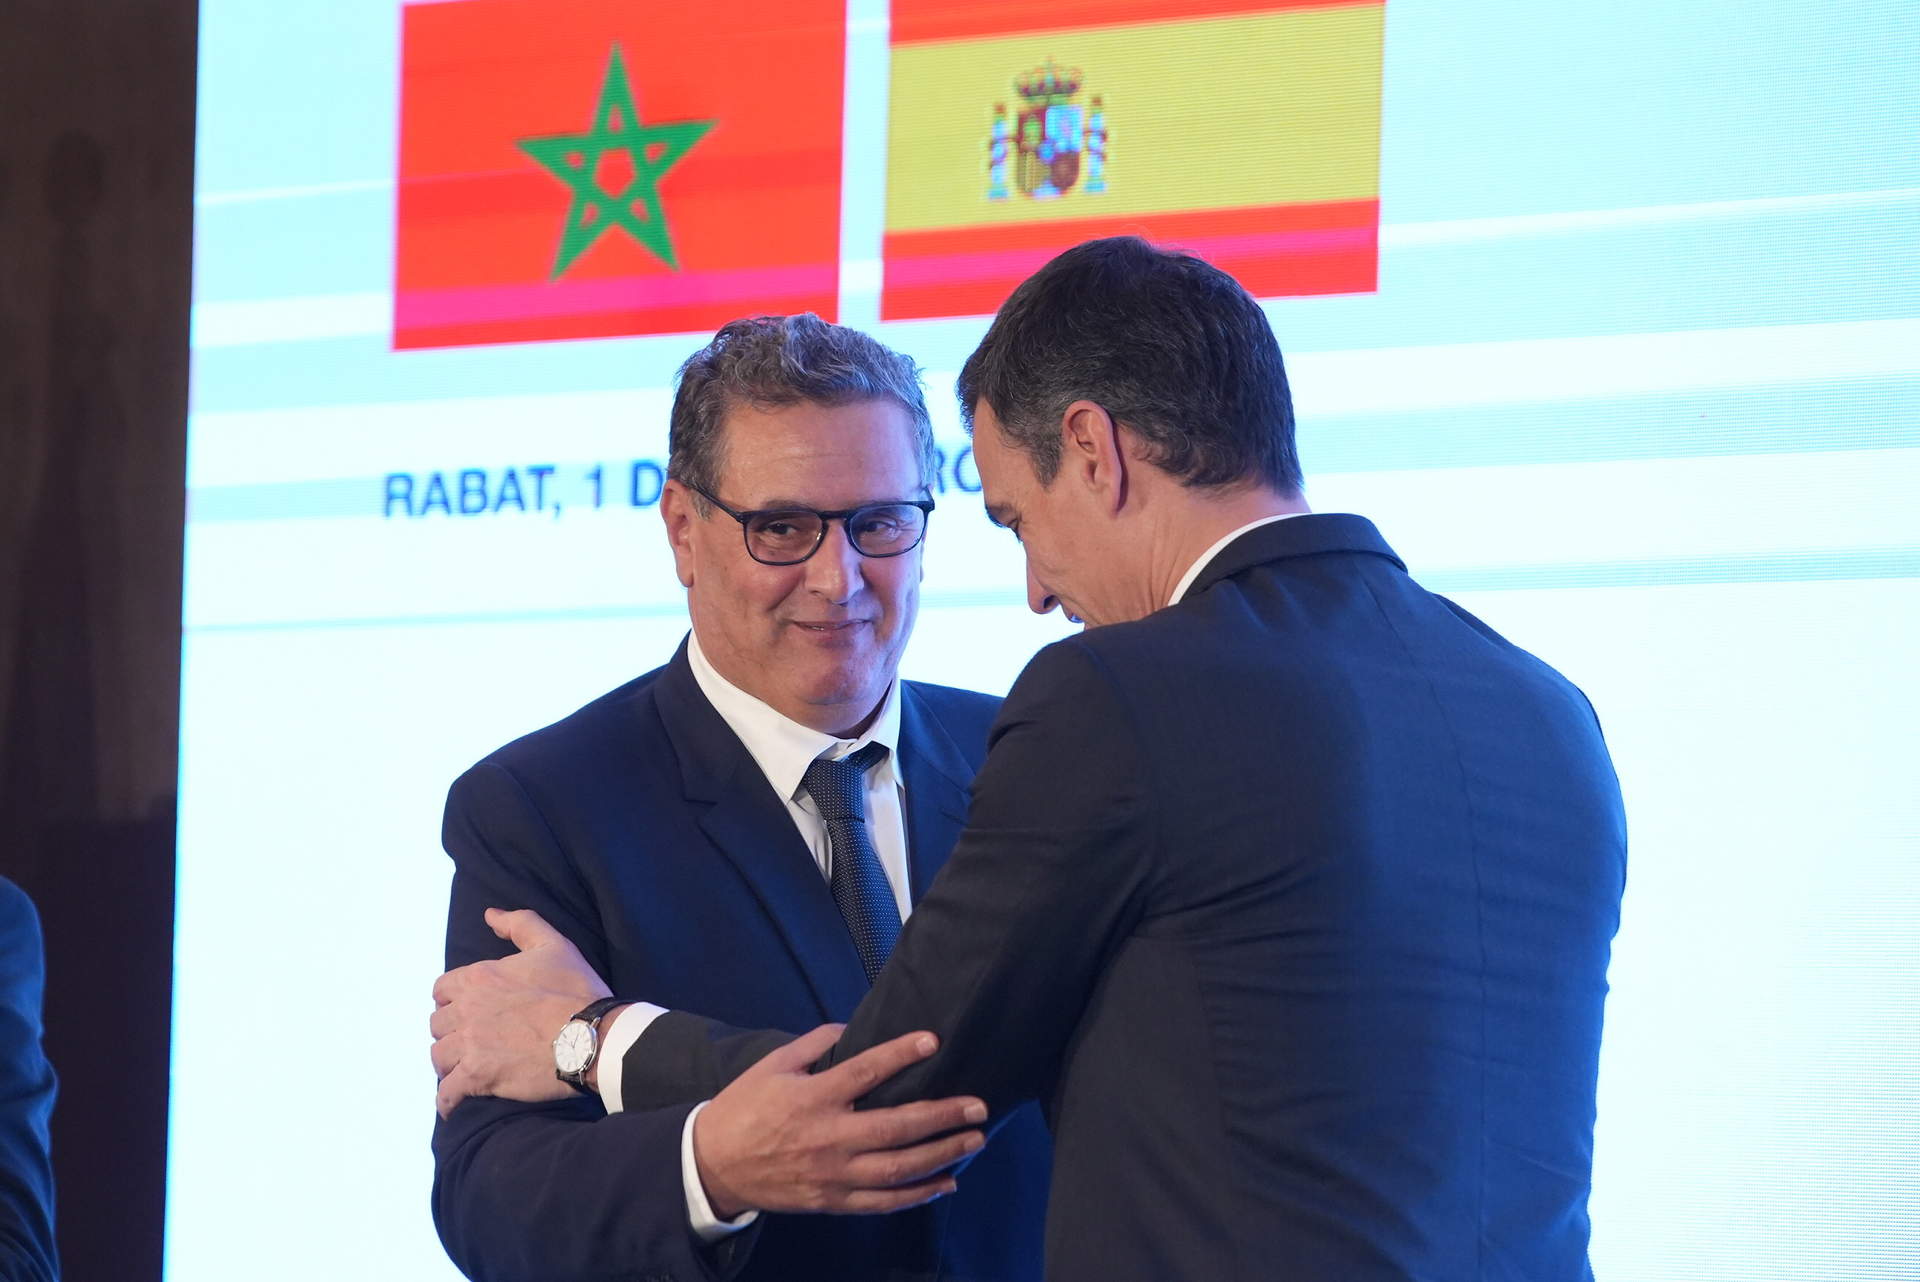 Marruecos destaca el  valor  de Sánchez por apoyar el plan de autonomía del Sáhara:  una visión histórica y realista 